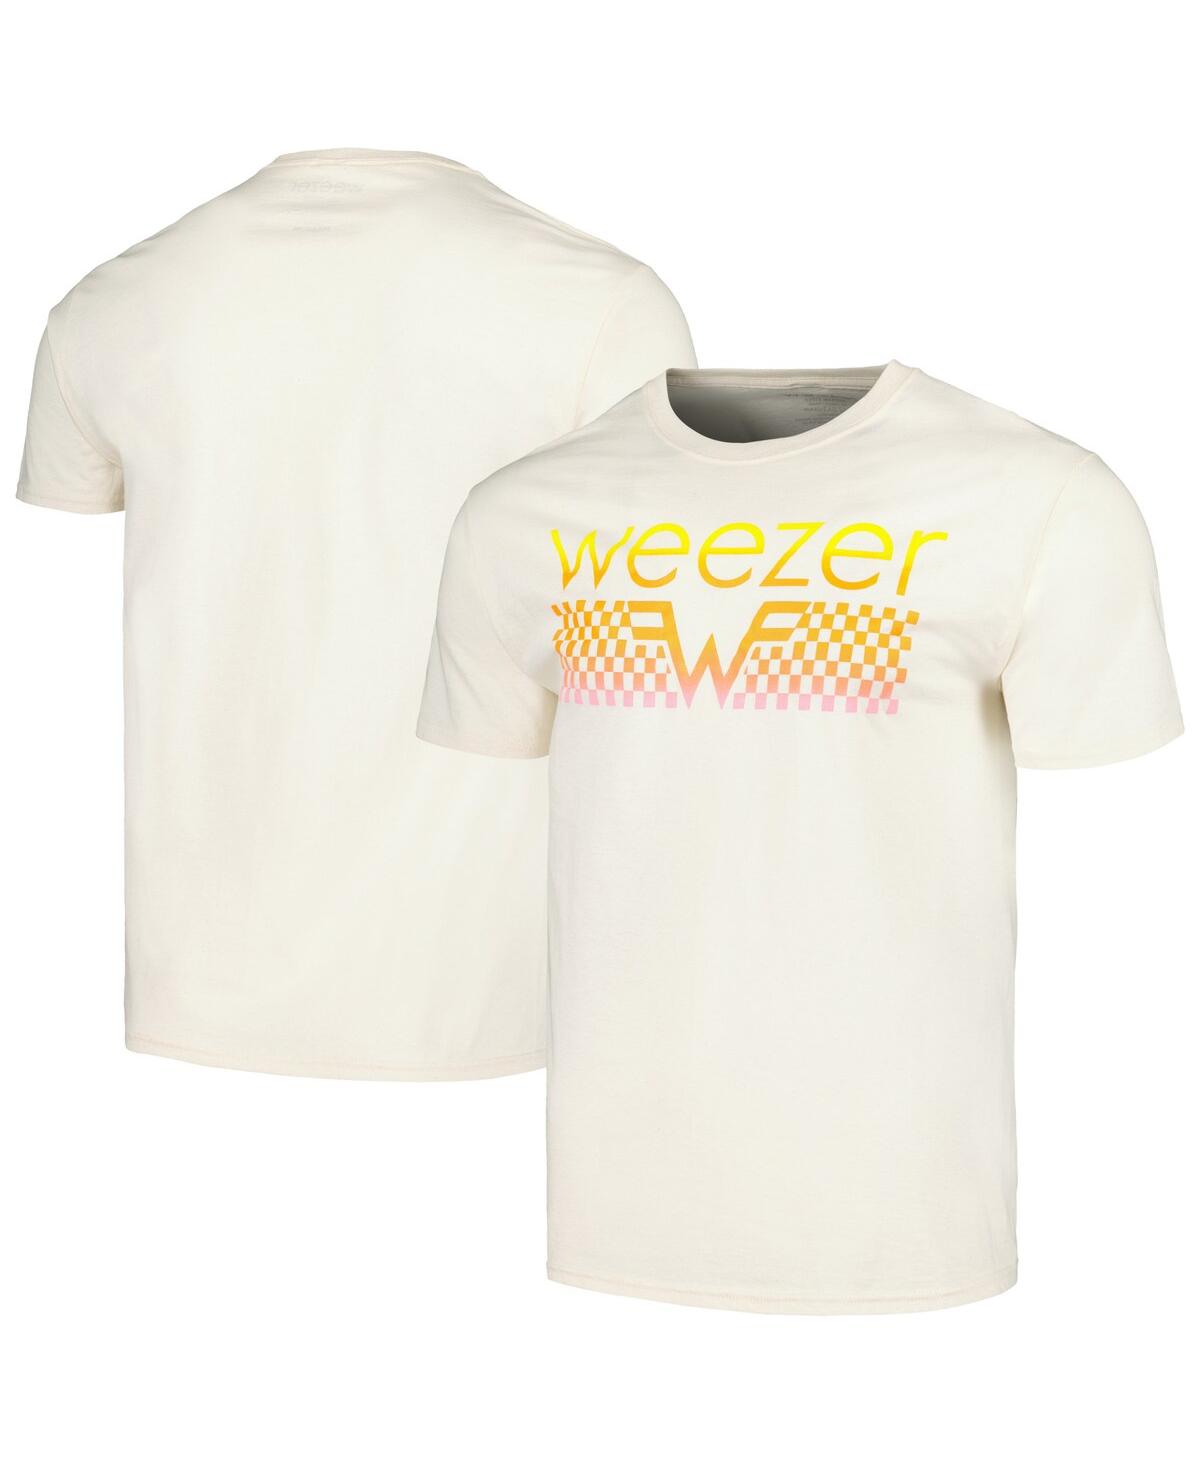 Men's Natural Weezer T-shirt - Natural